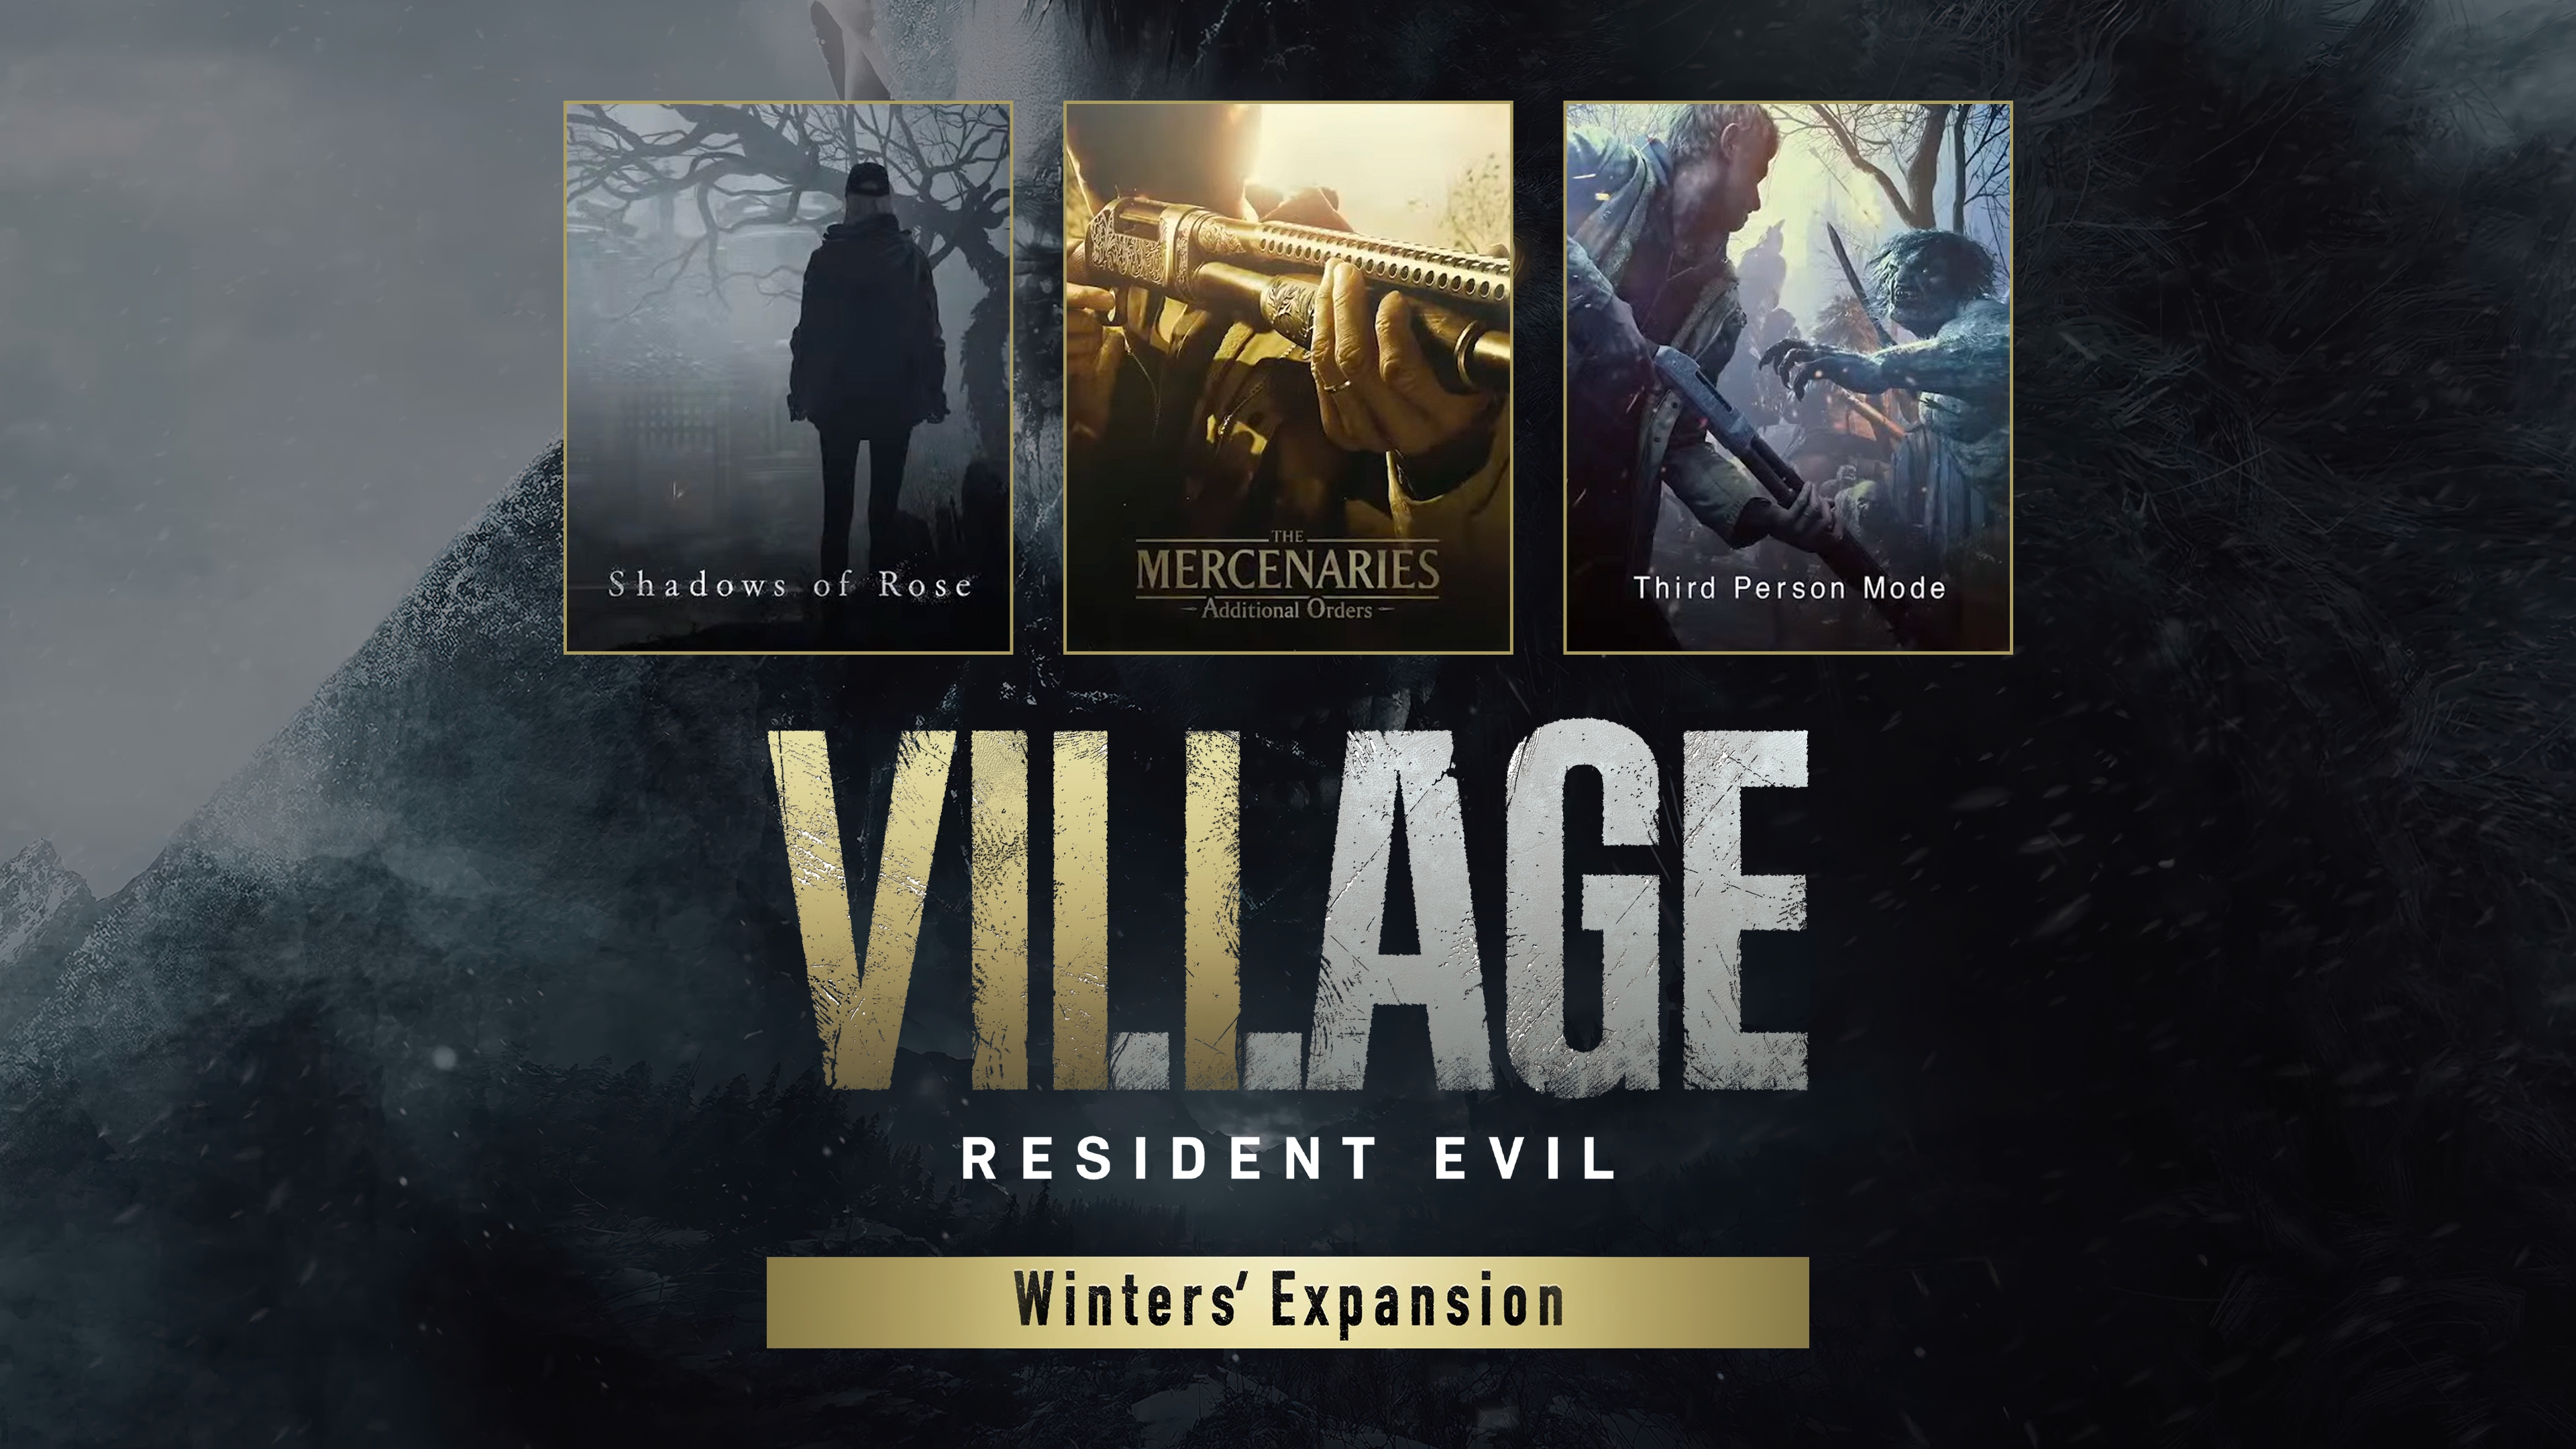 Resident Evil Village on Steam